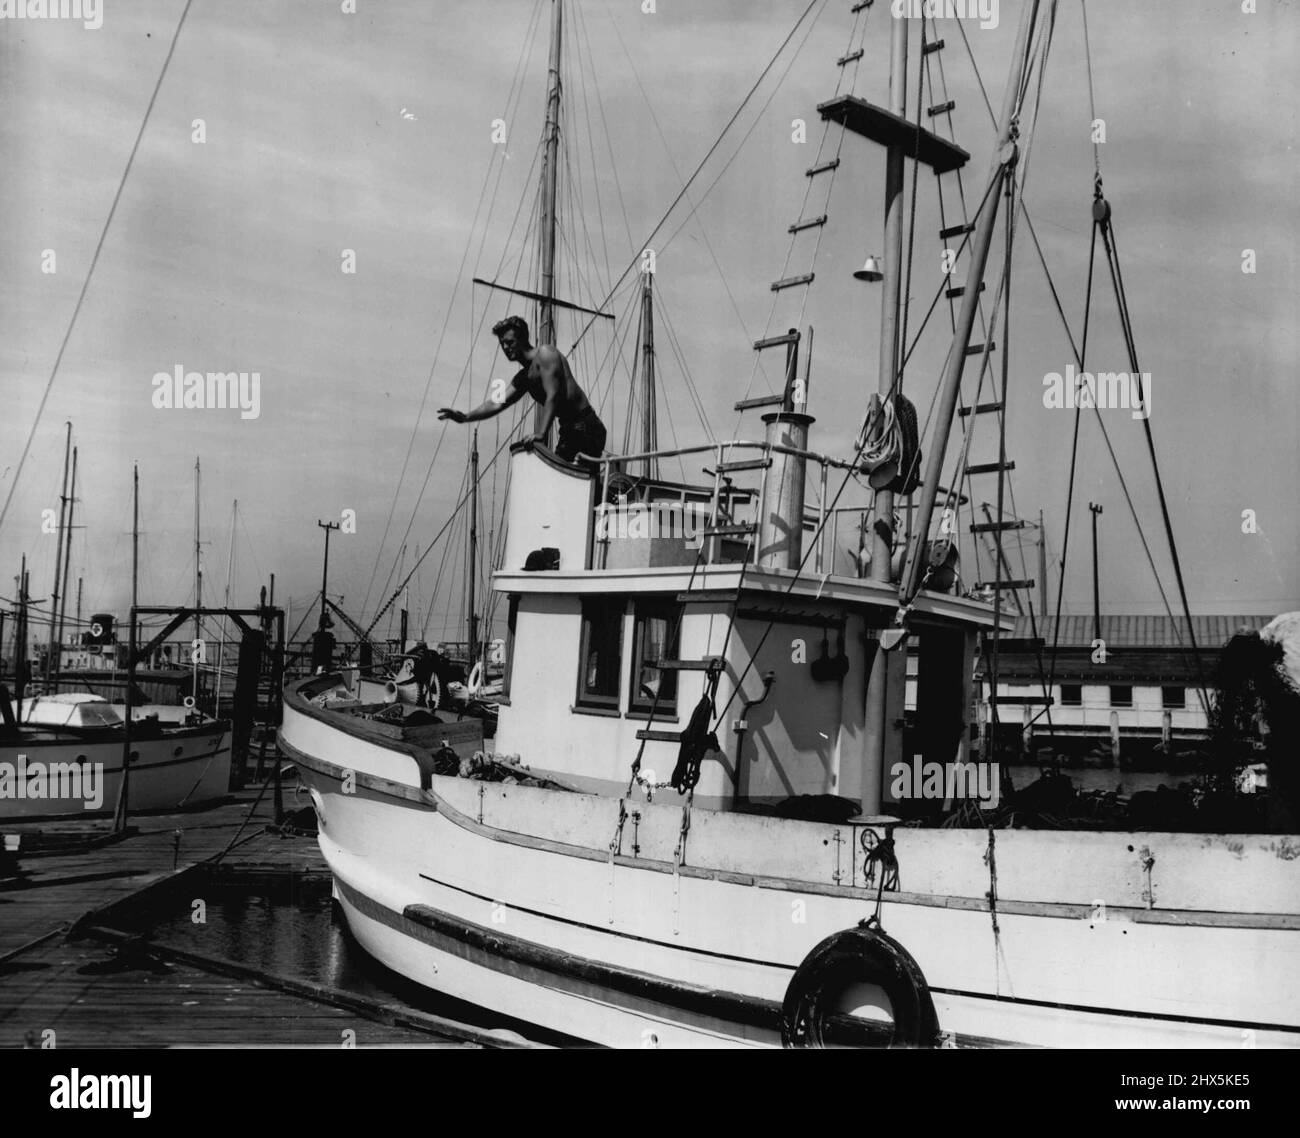 Screen Land Sideline - Bill Edwards, un joueur contractuel de 27 ans, espère un jour jouer dans les films de qualité Westerns et de mer. Il est le plus proche de ce dernier, sur les bateaux de pêche sur lesquels il travaille entre les rôles d'écran, le plus récent étant dans « nos cœurs grandissent ». Le Blond de 6 pieds 5, qui était un artiste commercial en difficulté à New York lorsqu'il a eu sa première chance à Hollywood, s'attaque ici à sa côte, alors qu'il aide un bateau de pêche à quai. 23 juillet 1946. (Photo par Wide World photos). Banque D'Images